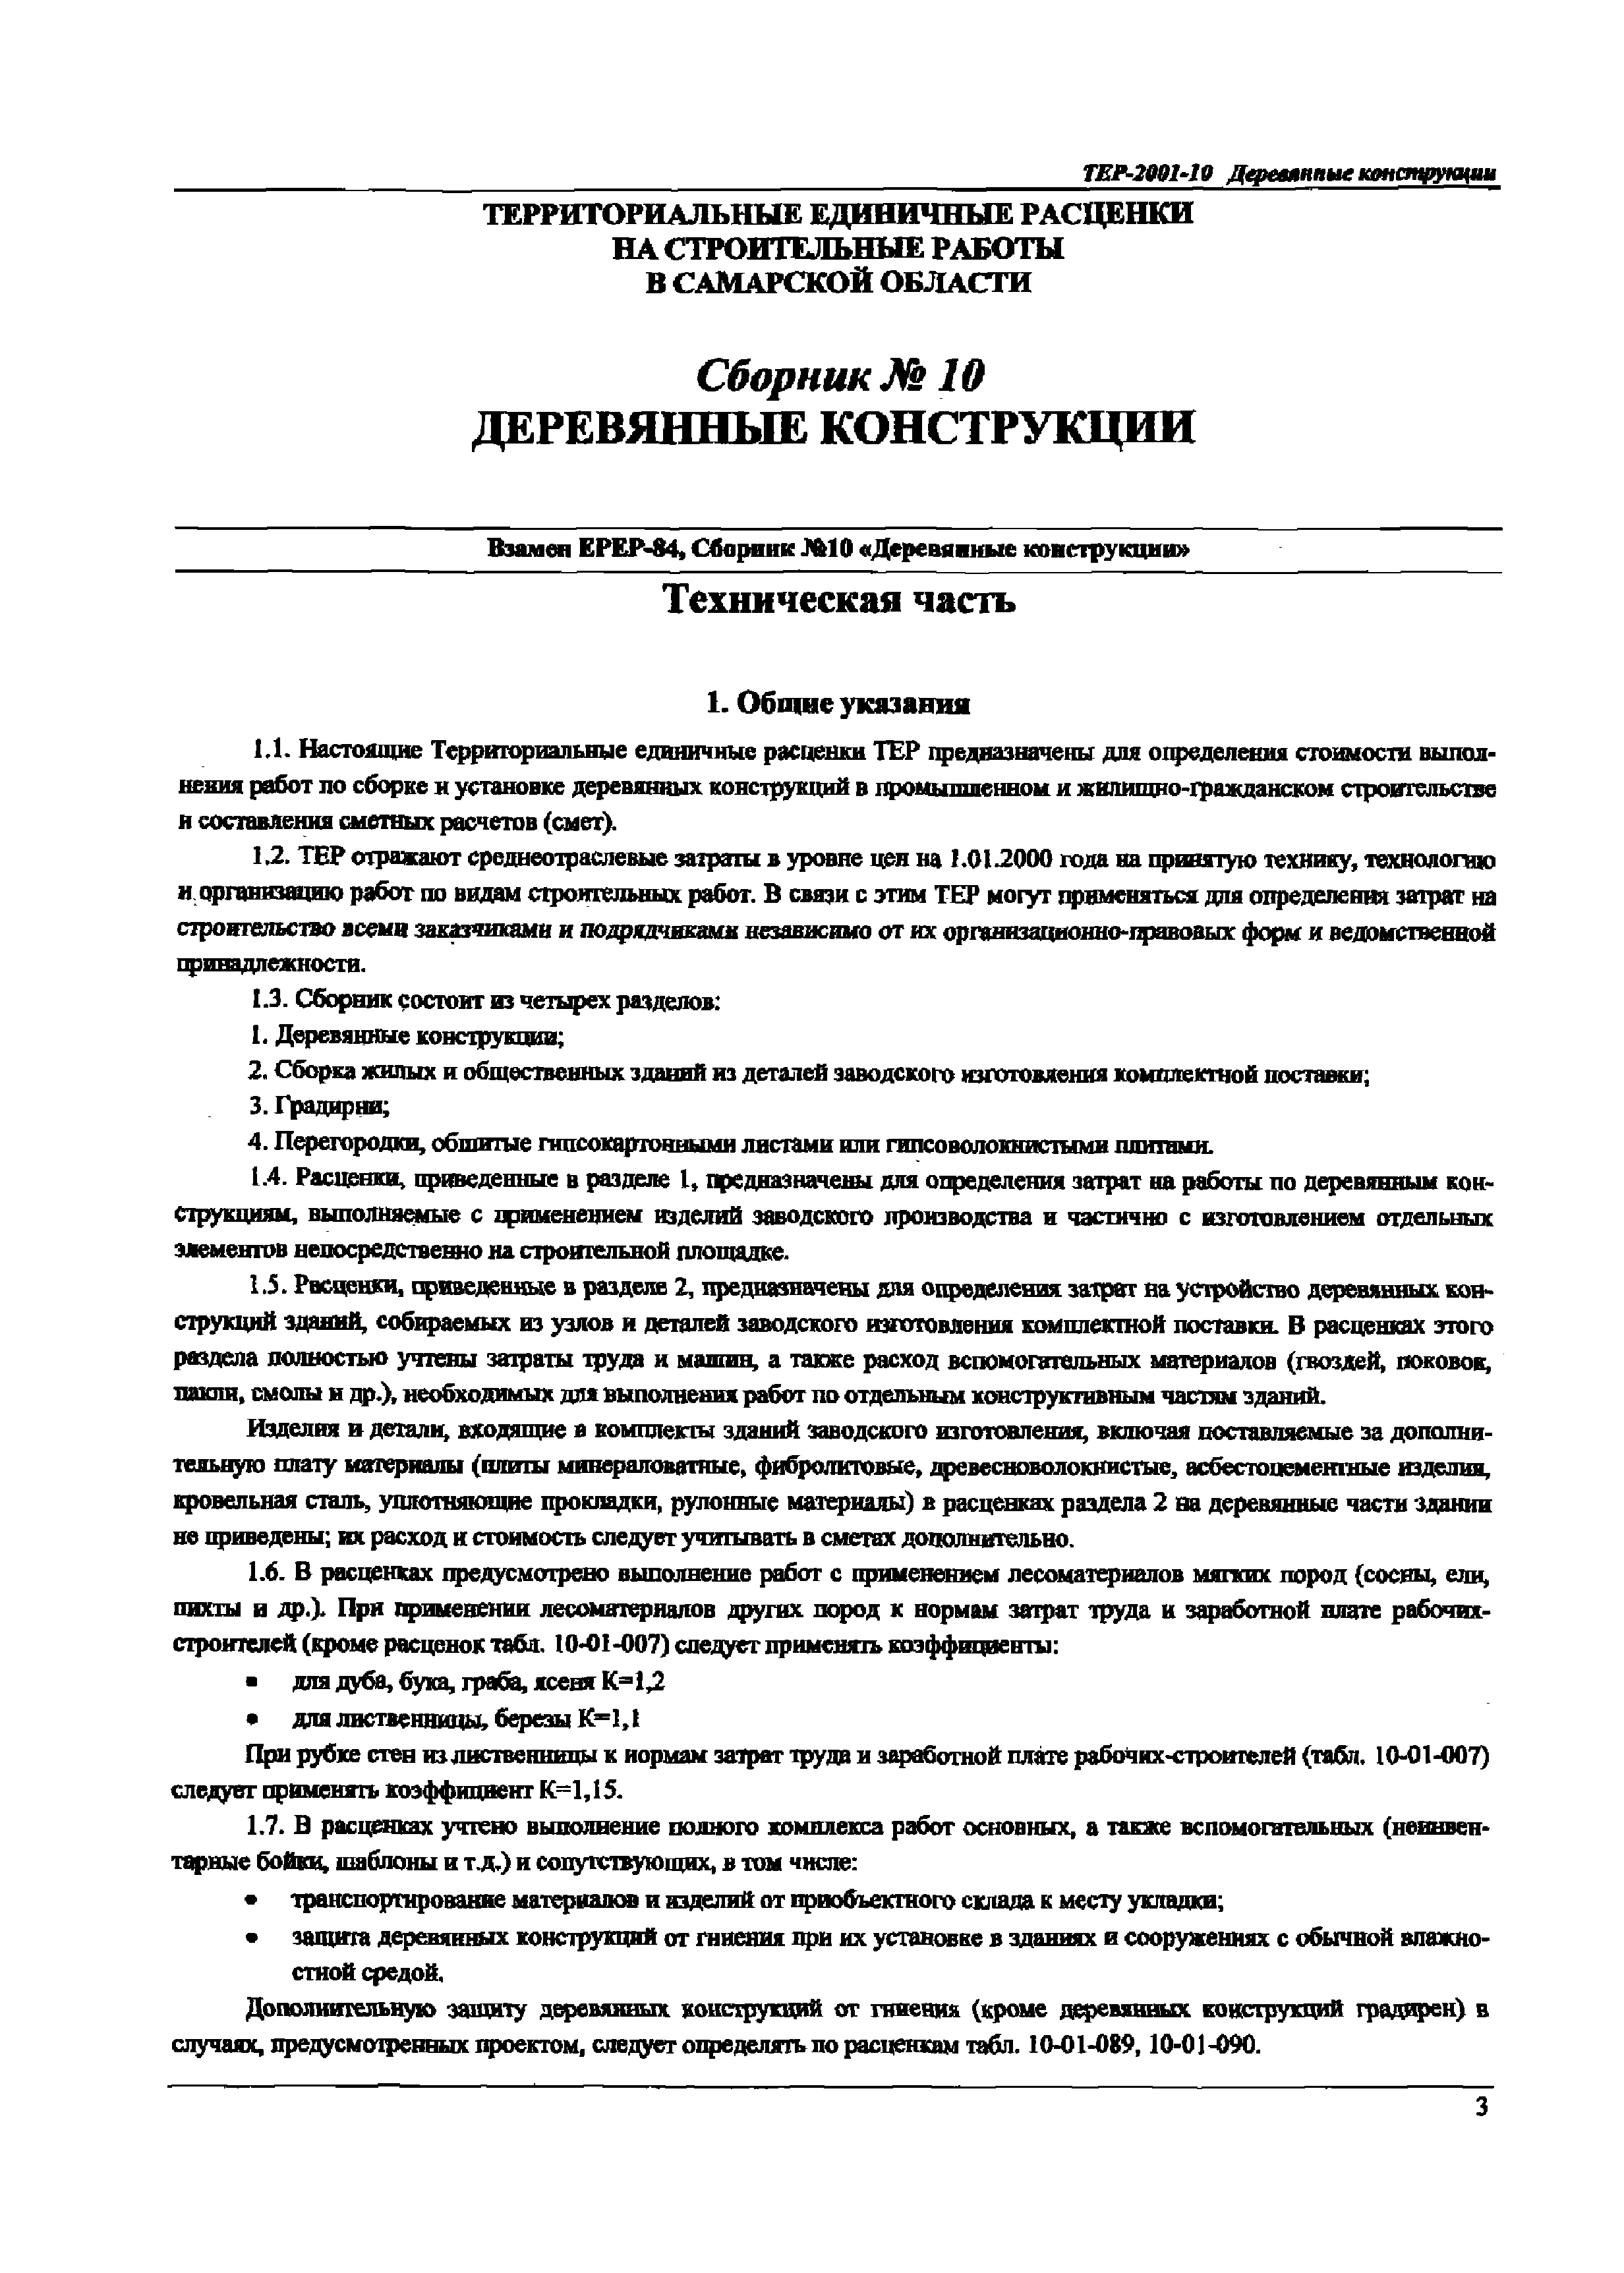 ТЕР Самарской области 2001-10